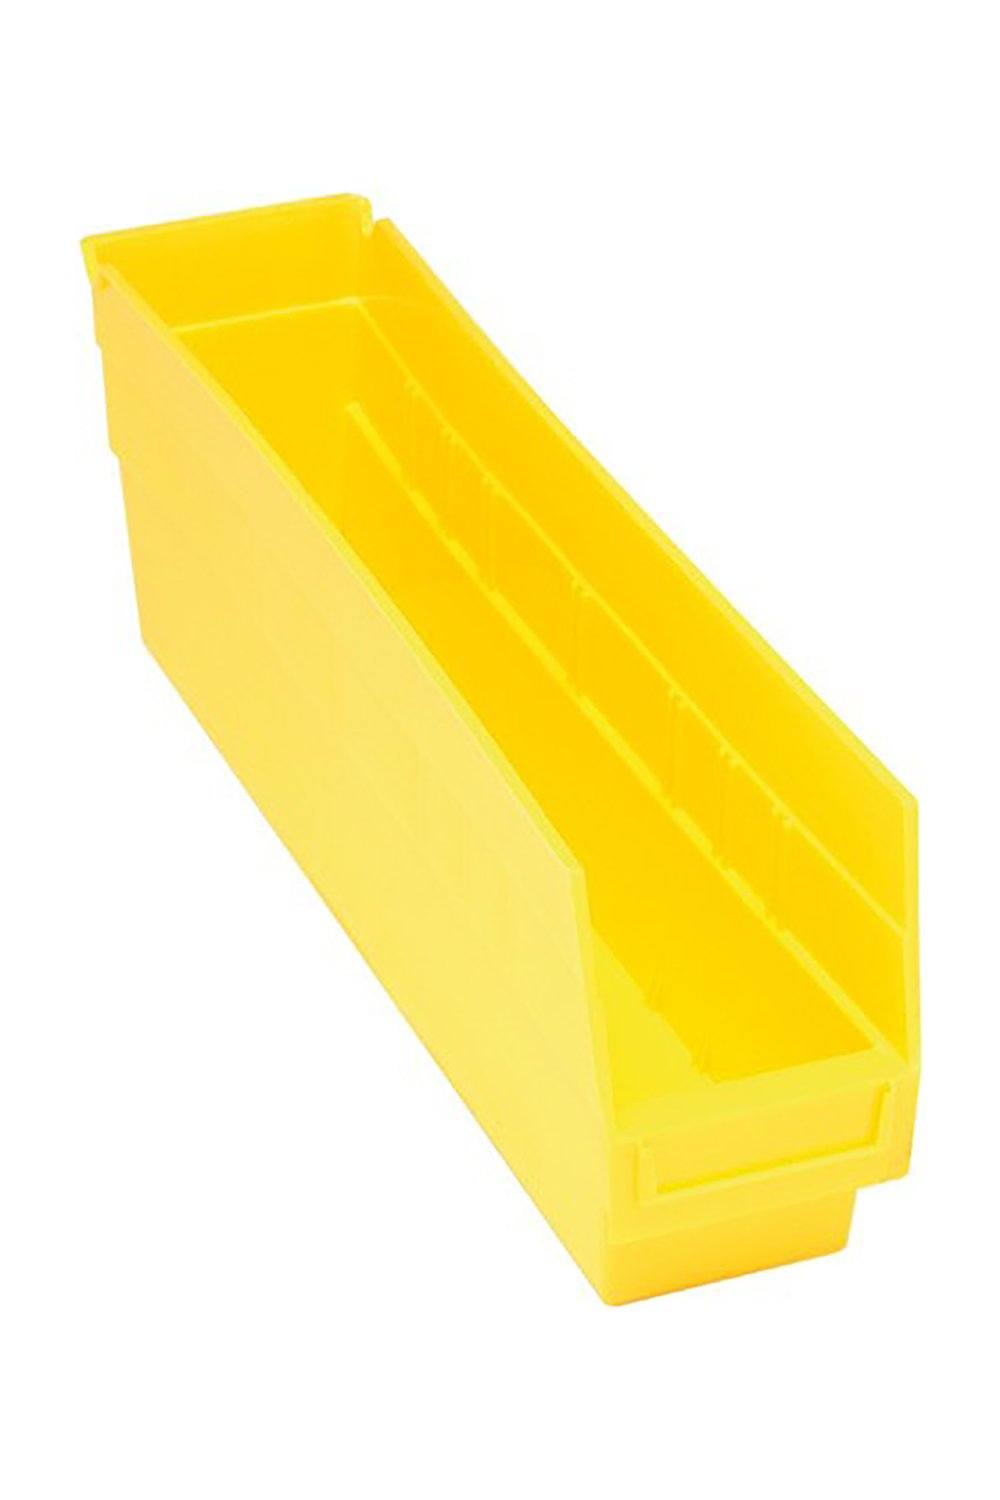 Shelf Bin for 18"D Shelves Bins & Containers Acart 17-7/8'' x 4-1/8'' x 6'' Yellow 